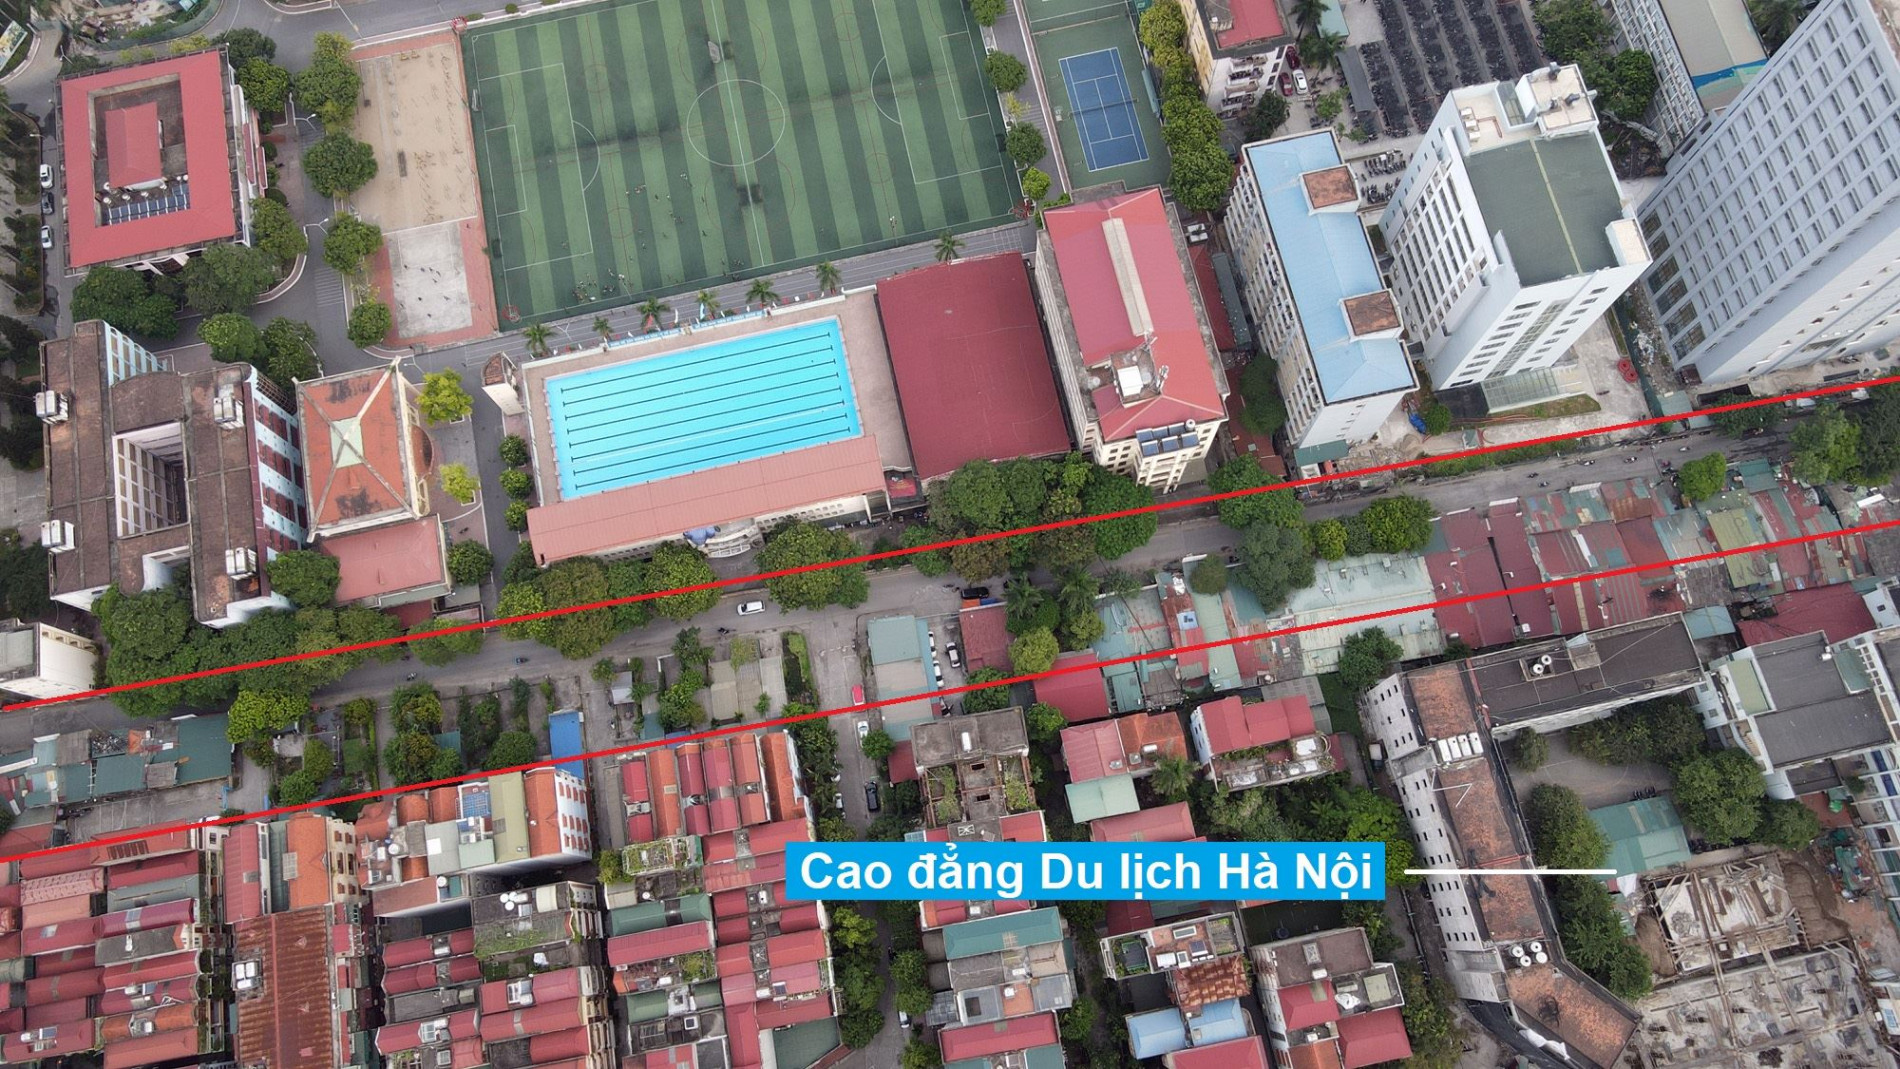 Đường sẽ mở theo quy hoạch ở phường Cổ Nhuế 1, Bắc Từ Liêm, Hà Nội (phần 2)